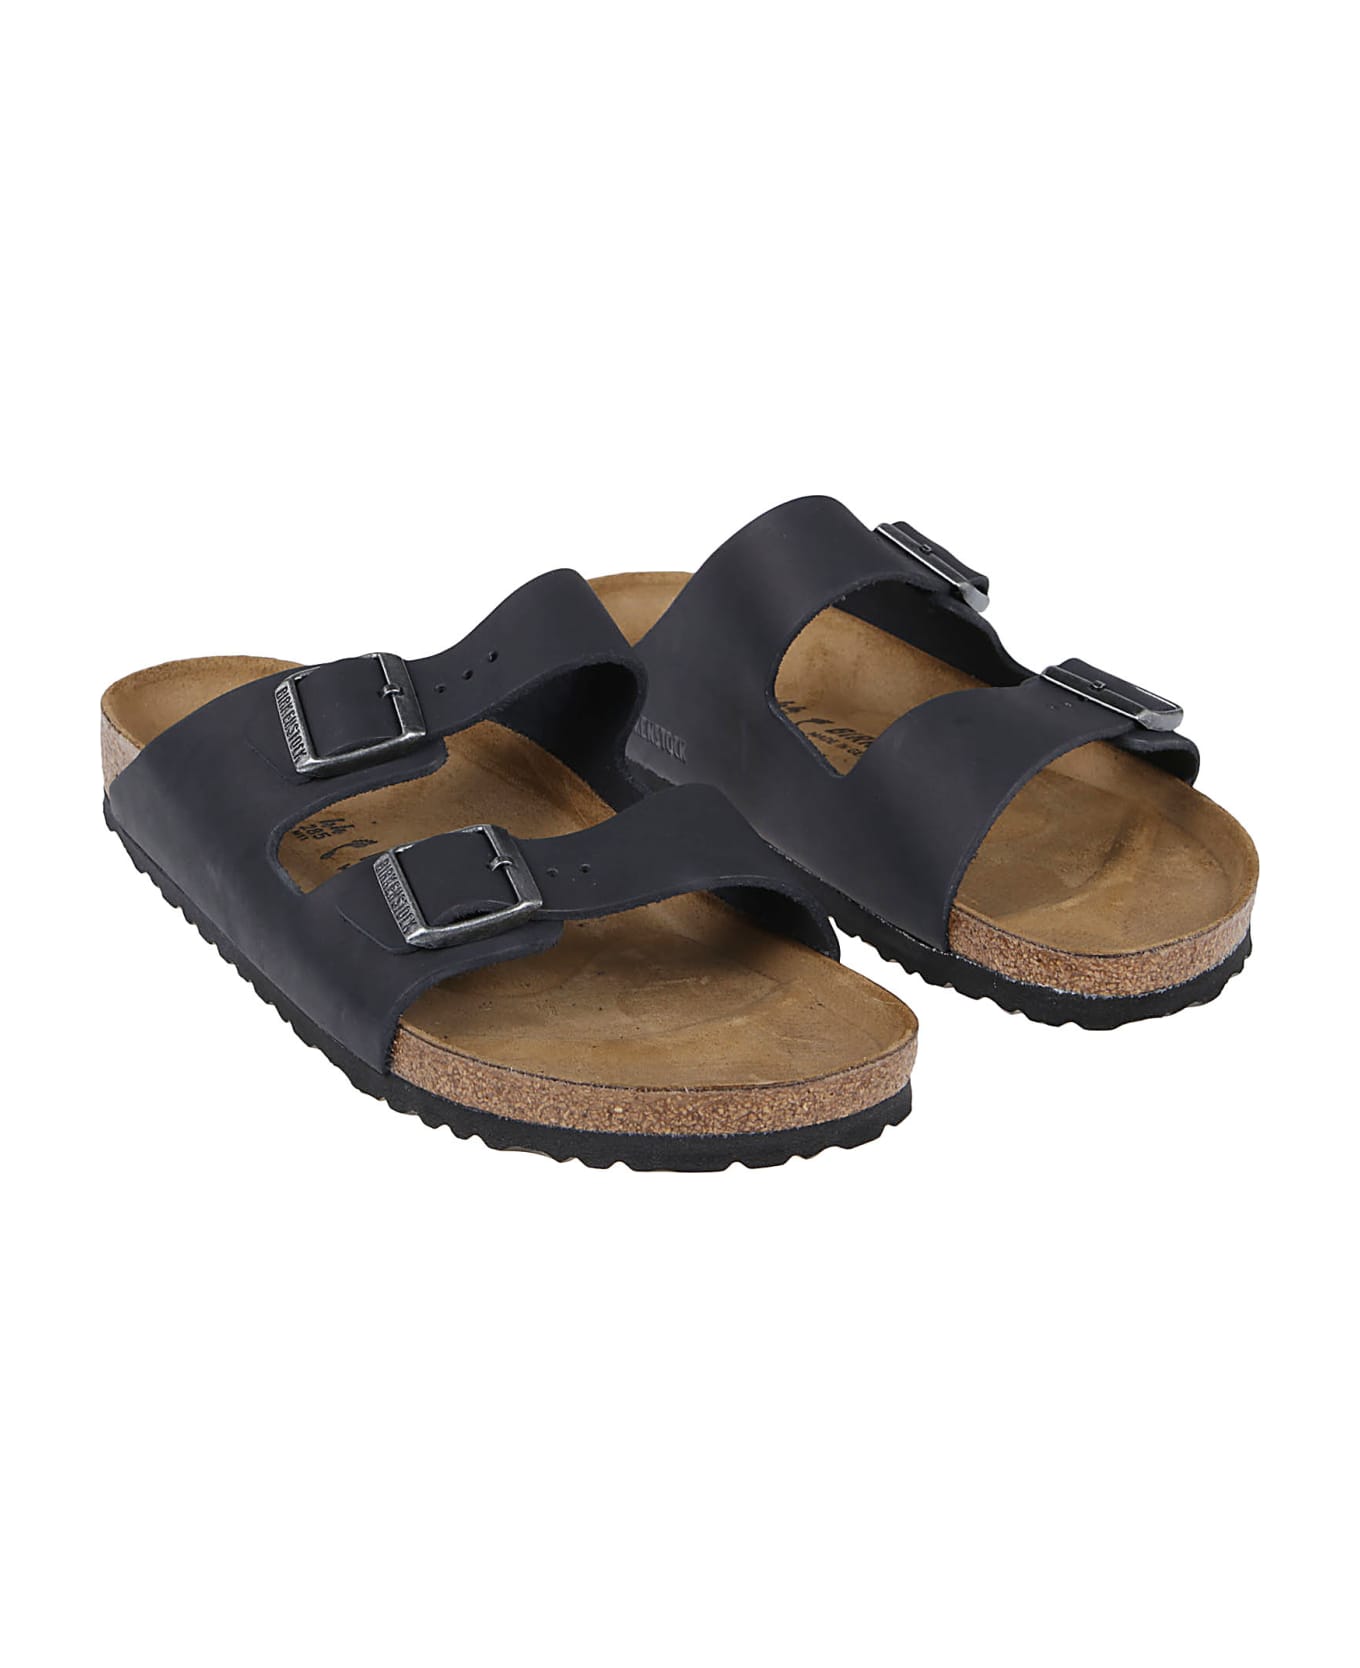 Birkenstock Arizona Sandals - Black